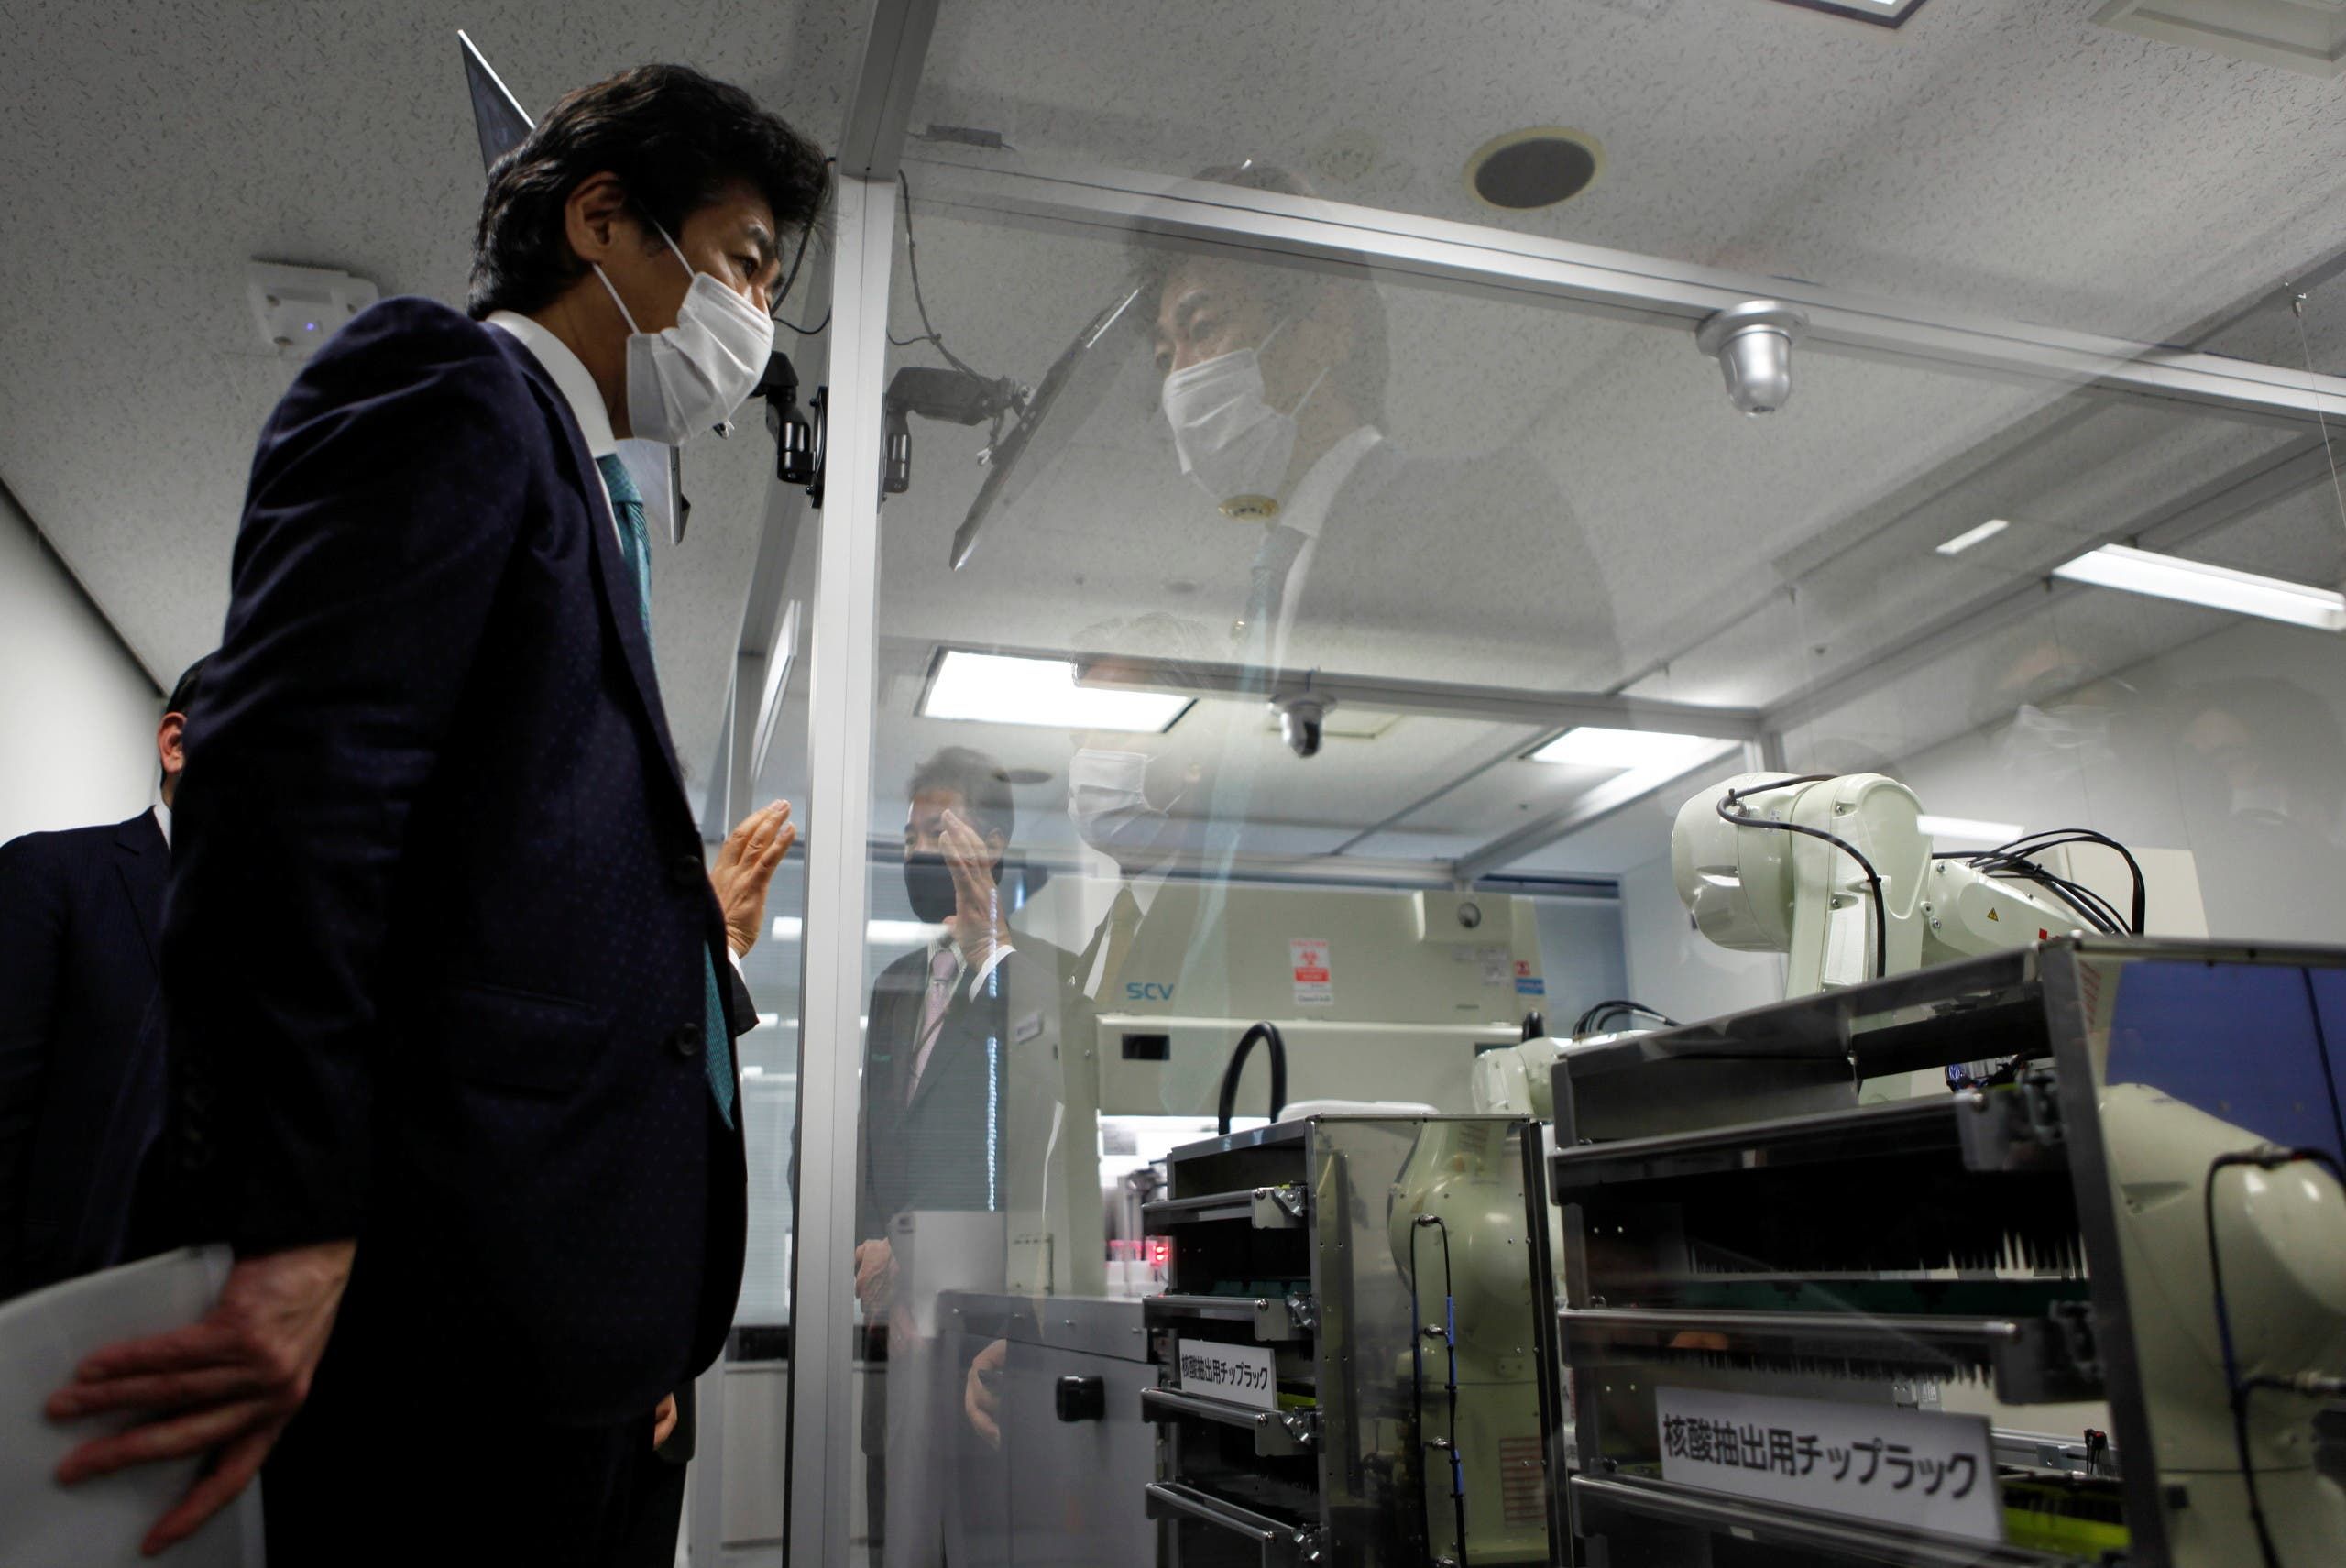 وزير الصحة الياباني نوريهيسا تامورا يعاين الروبوت الجديد